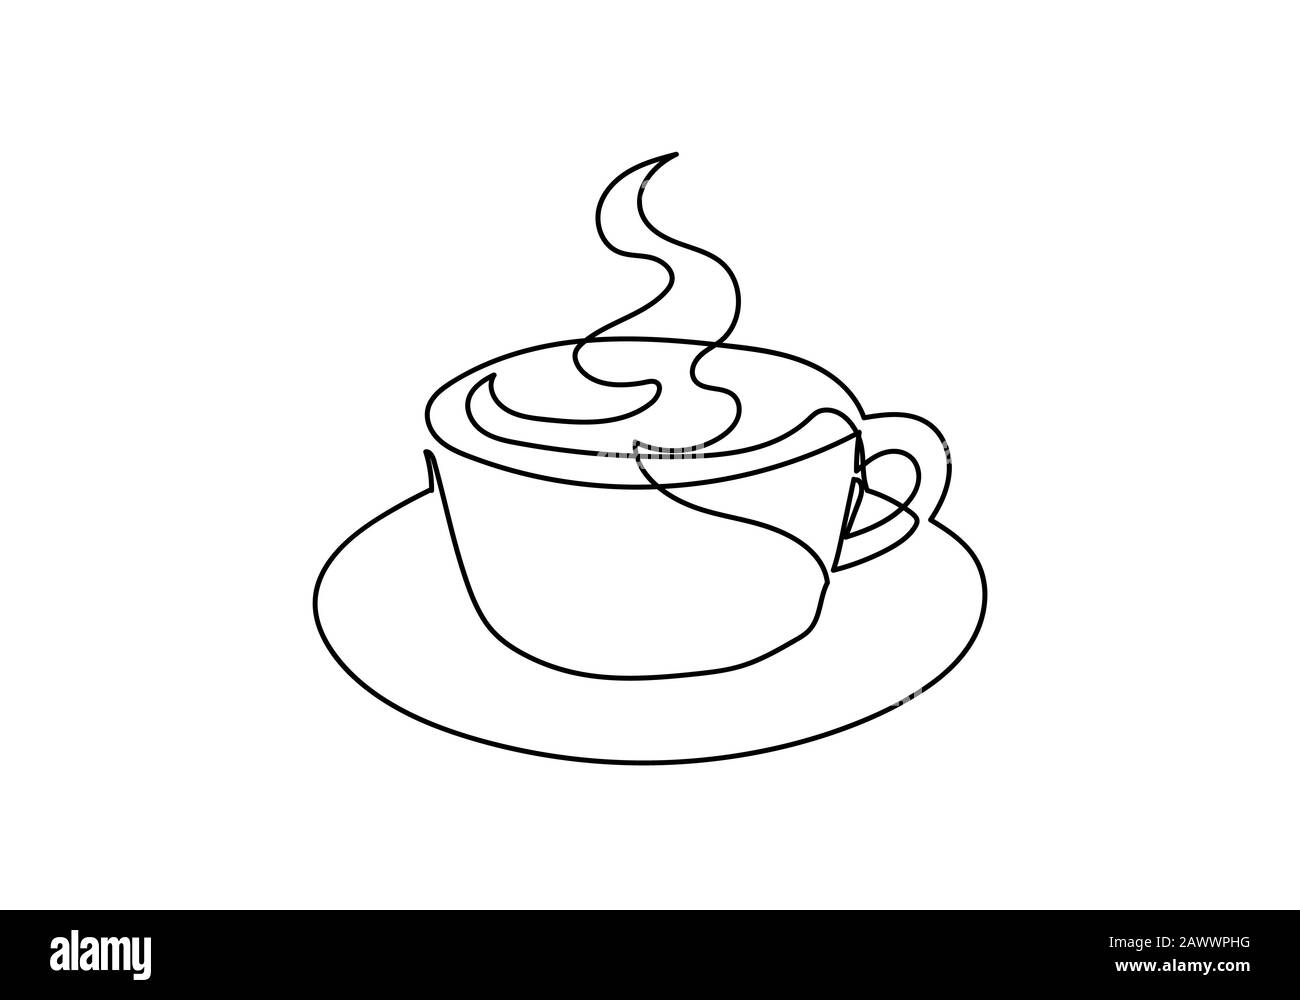 Taza De Café Pequeña - Imagen Lineal Vectorial Para Colorear. Taza: Un  Elemento Para Un Libro Para Colorear. Esquema De Dibujo A Mano.  Ilustraciones svg, vectoriales, clip art vectorizado libre de derechos.